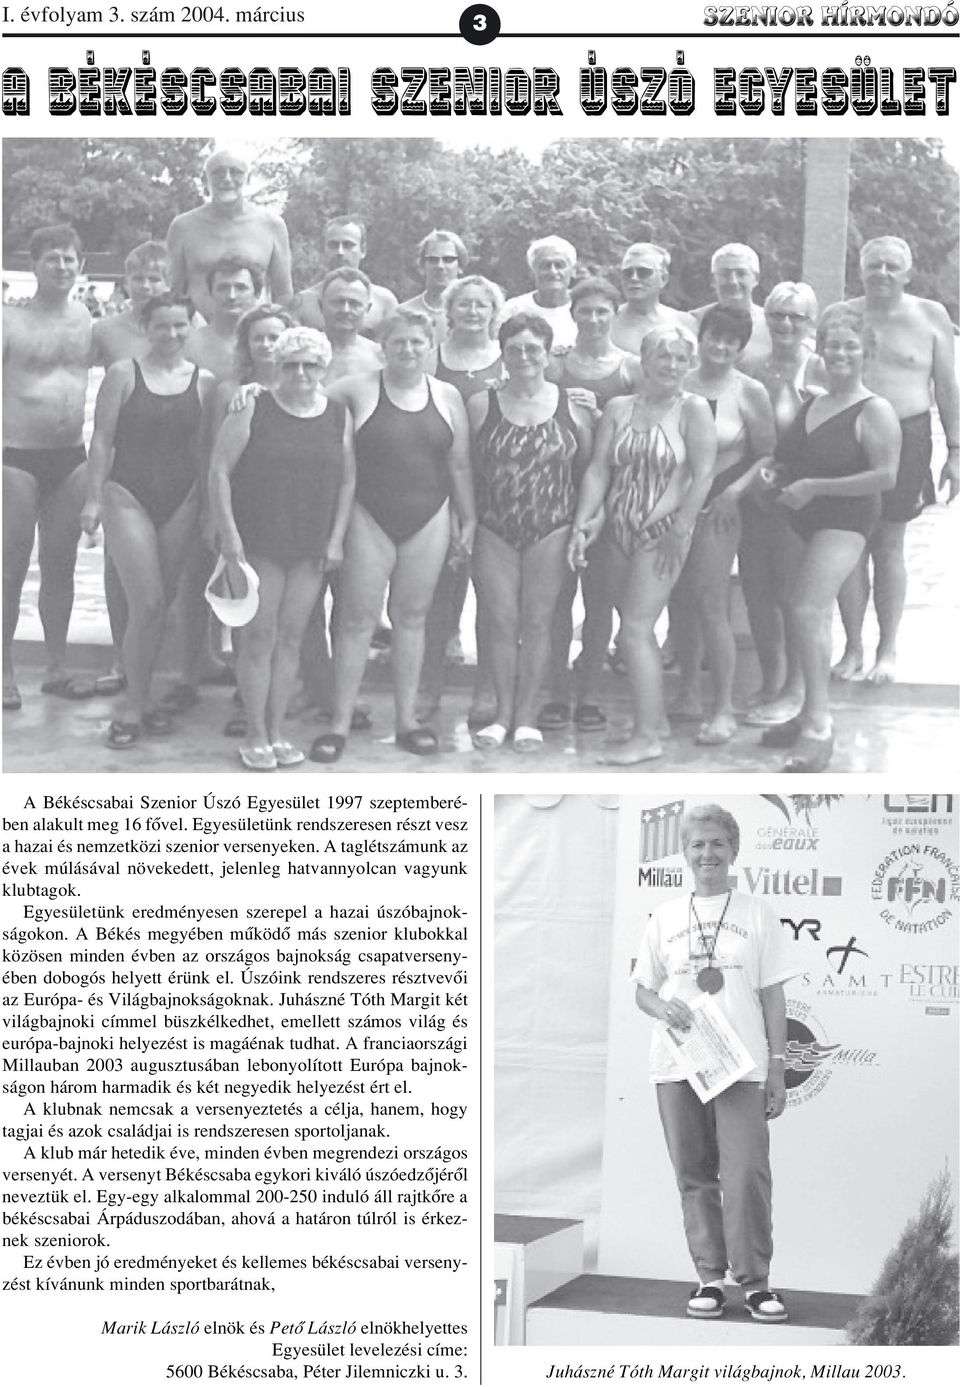 Egyesületünk eredményesen szerepel a hazai úszóbajnokságokon. A Békés megyében mûködõ más szenior klubokkal közösen minden évben az országos bajnokság csapatversenyében dobogós helyett érünk el.